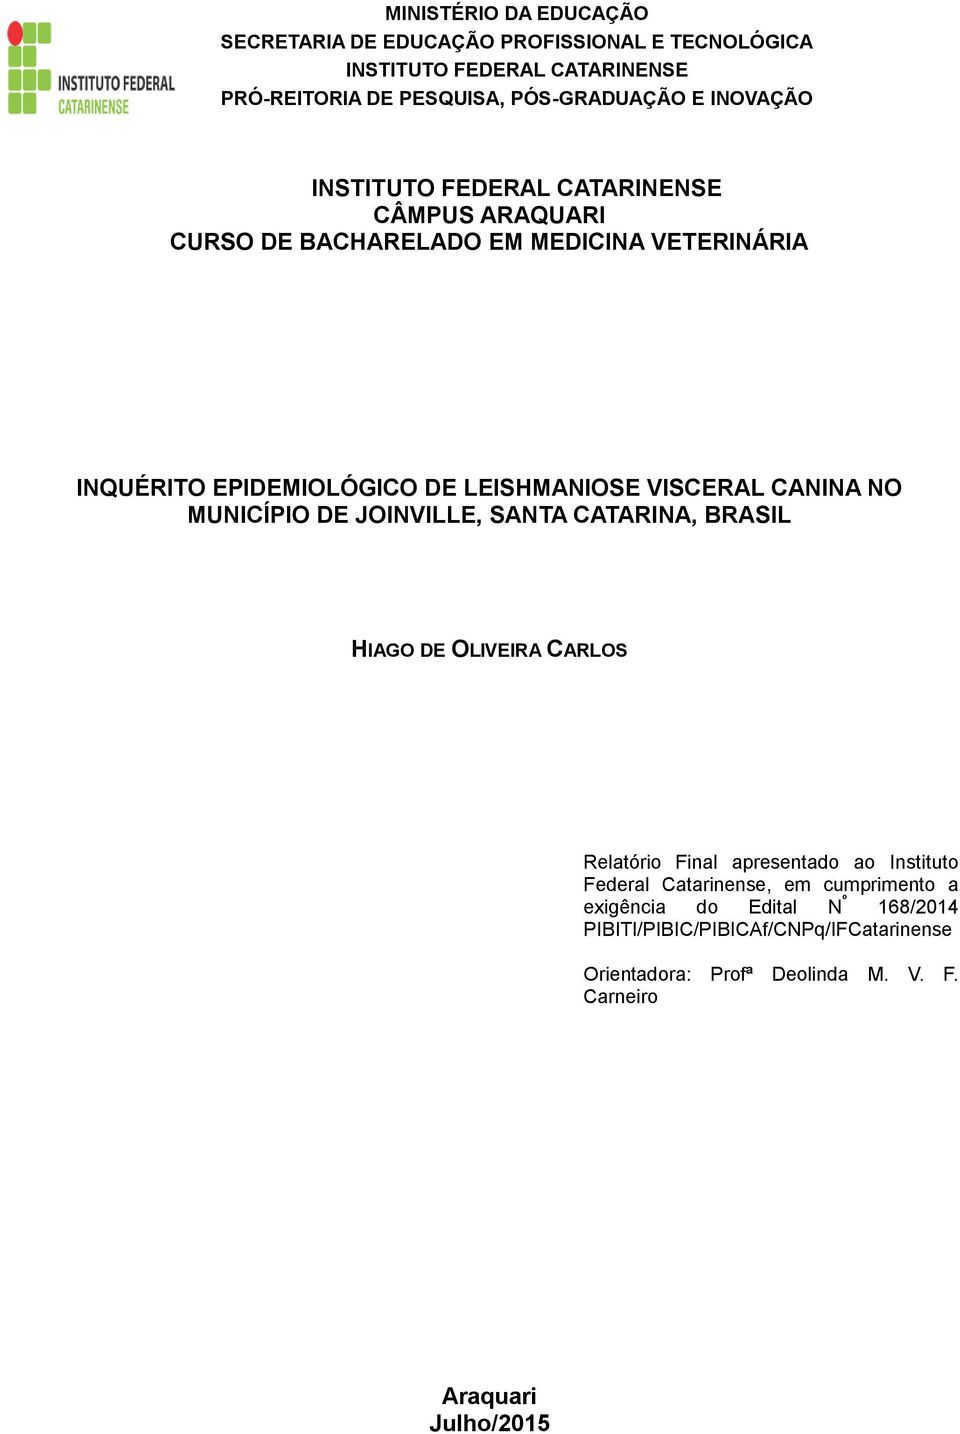 Final apresentado ao Instituto Federal Catarinense, em cumprimento a exigência do Edital N º 168/2014